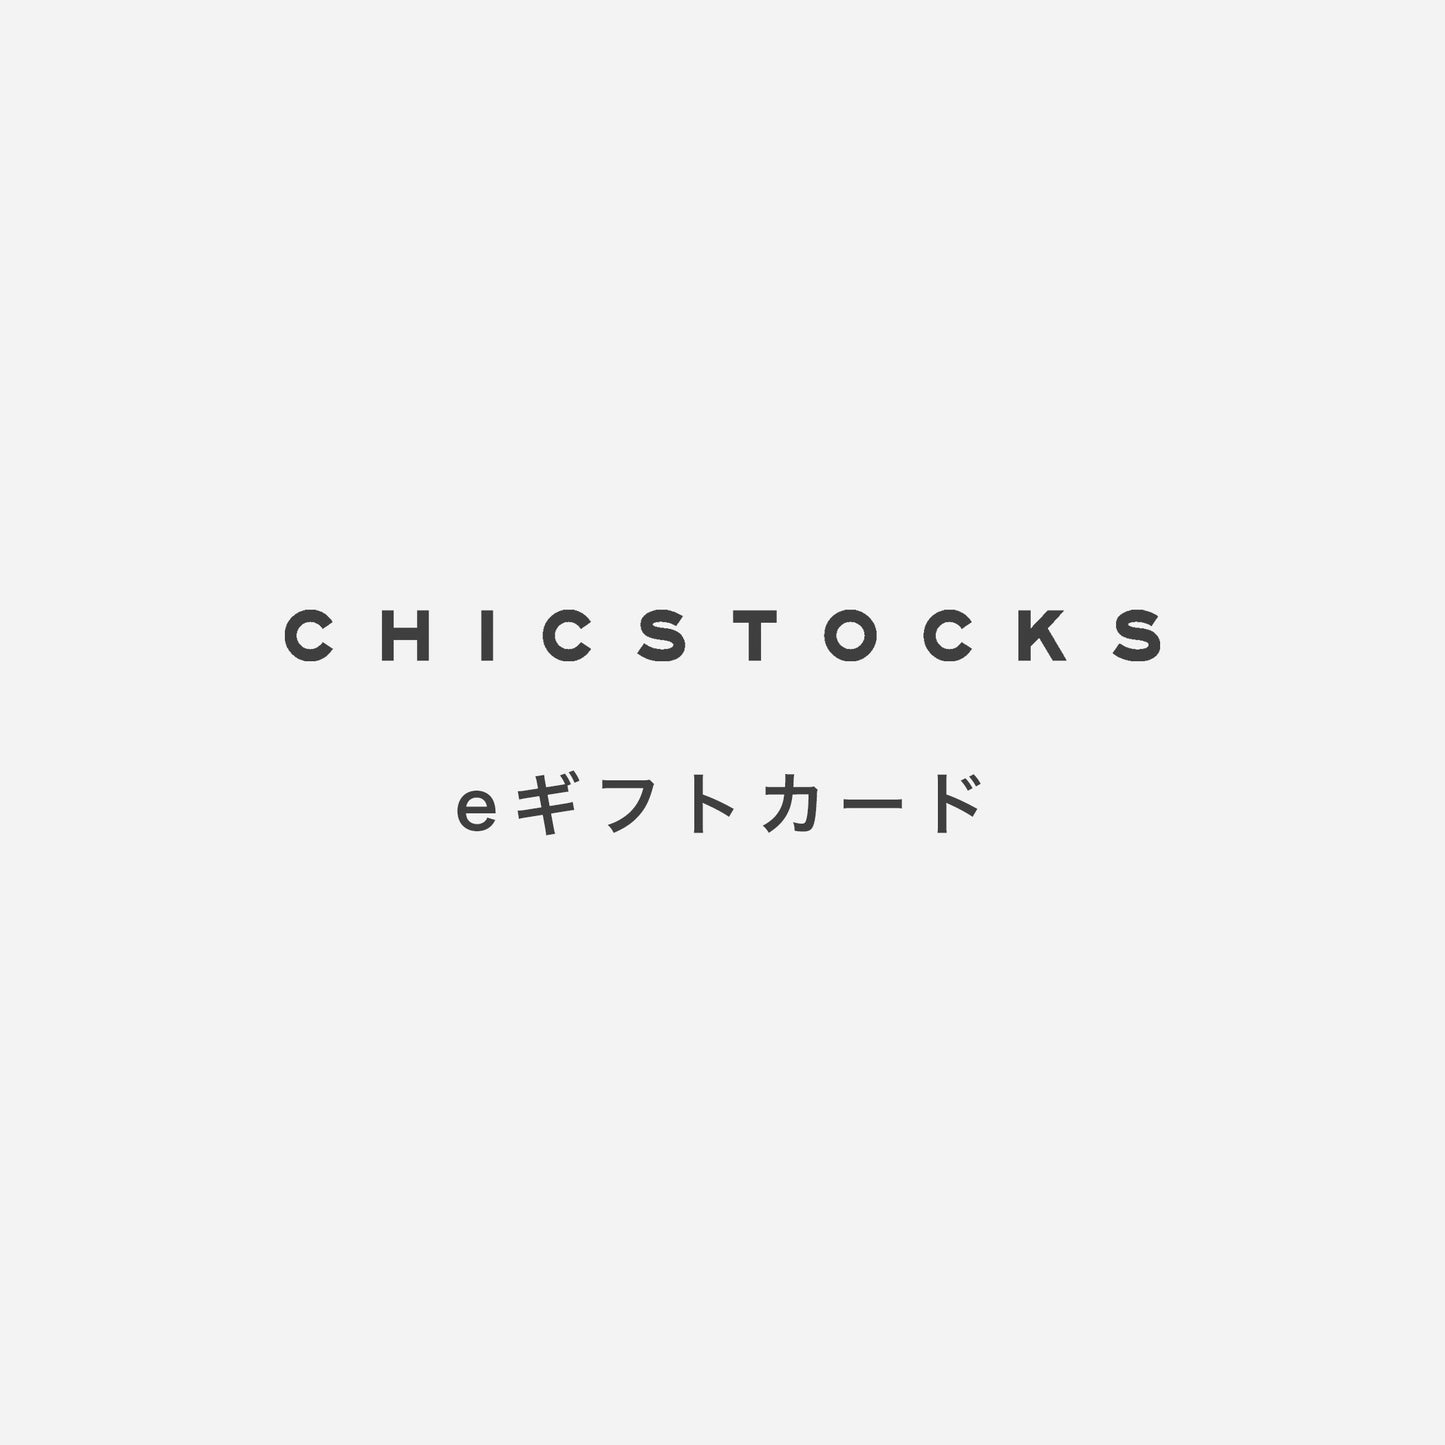 CHICSTOCKS ギフトカード